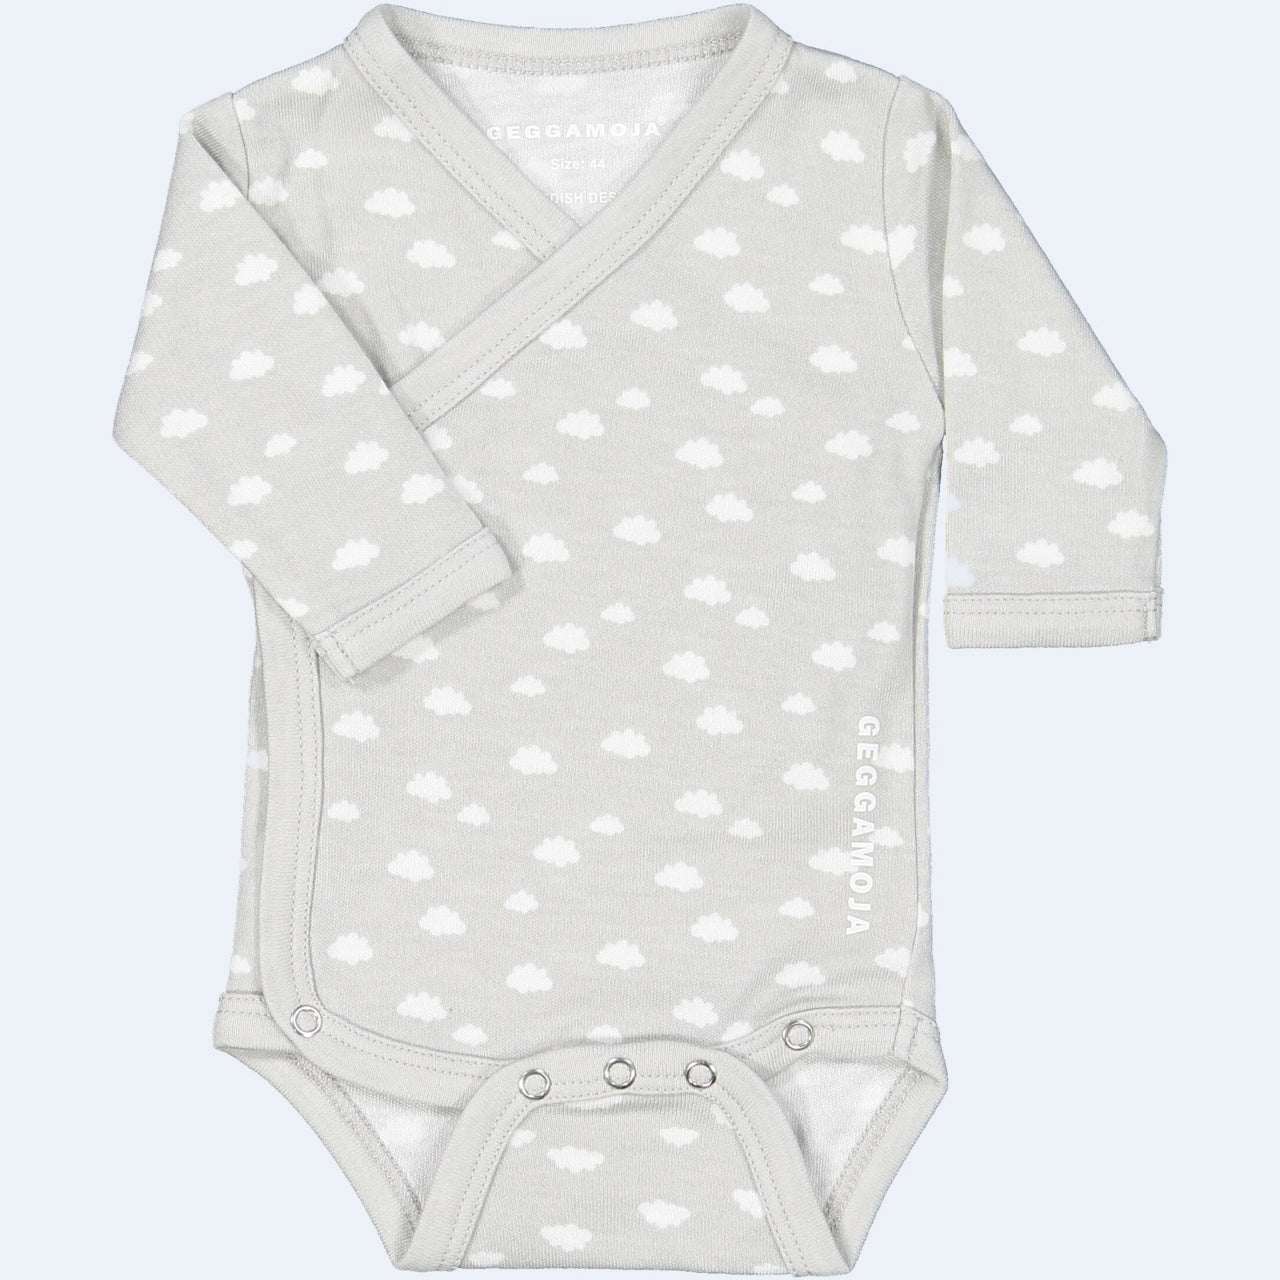 Geggamoja® Preemie Body Shirt in Bamboo/Organic Cotton - GREY CLOUD